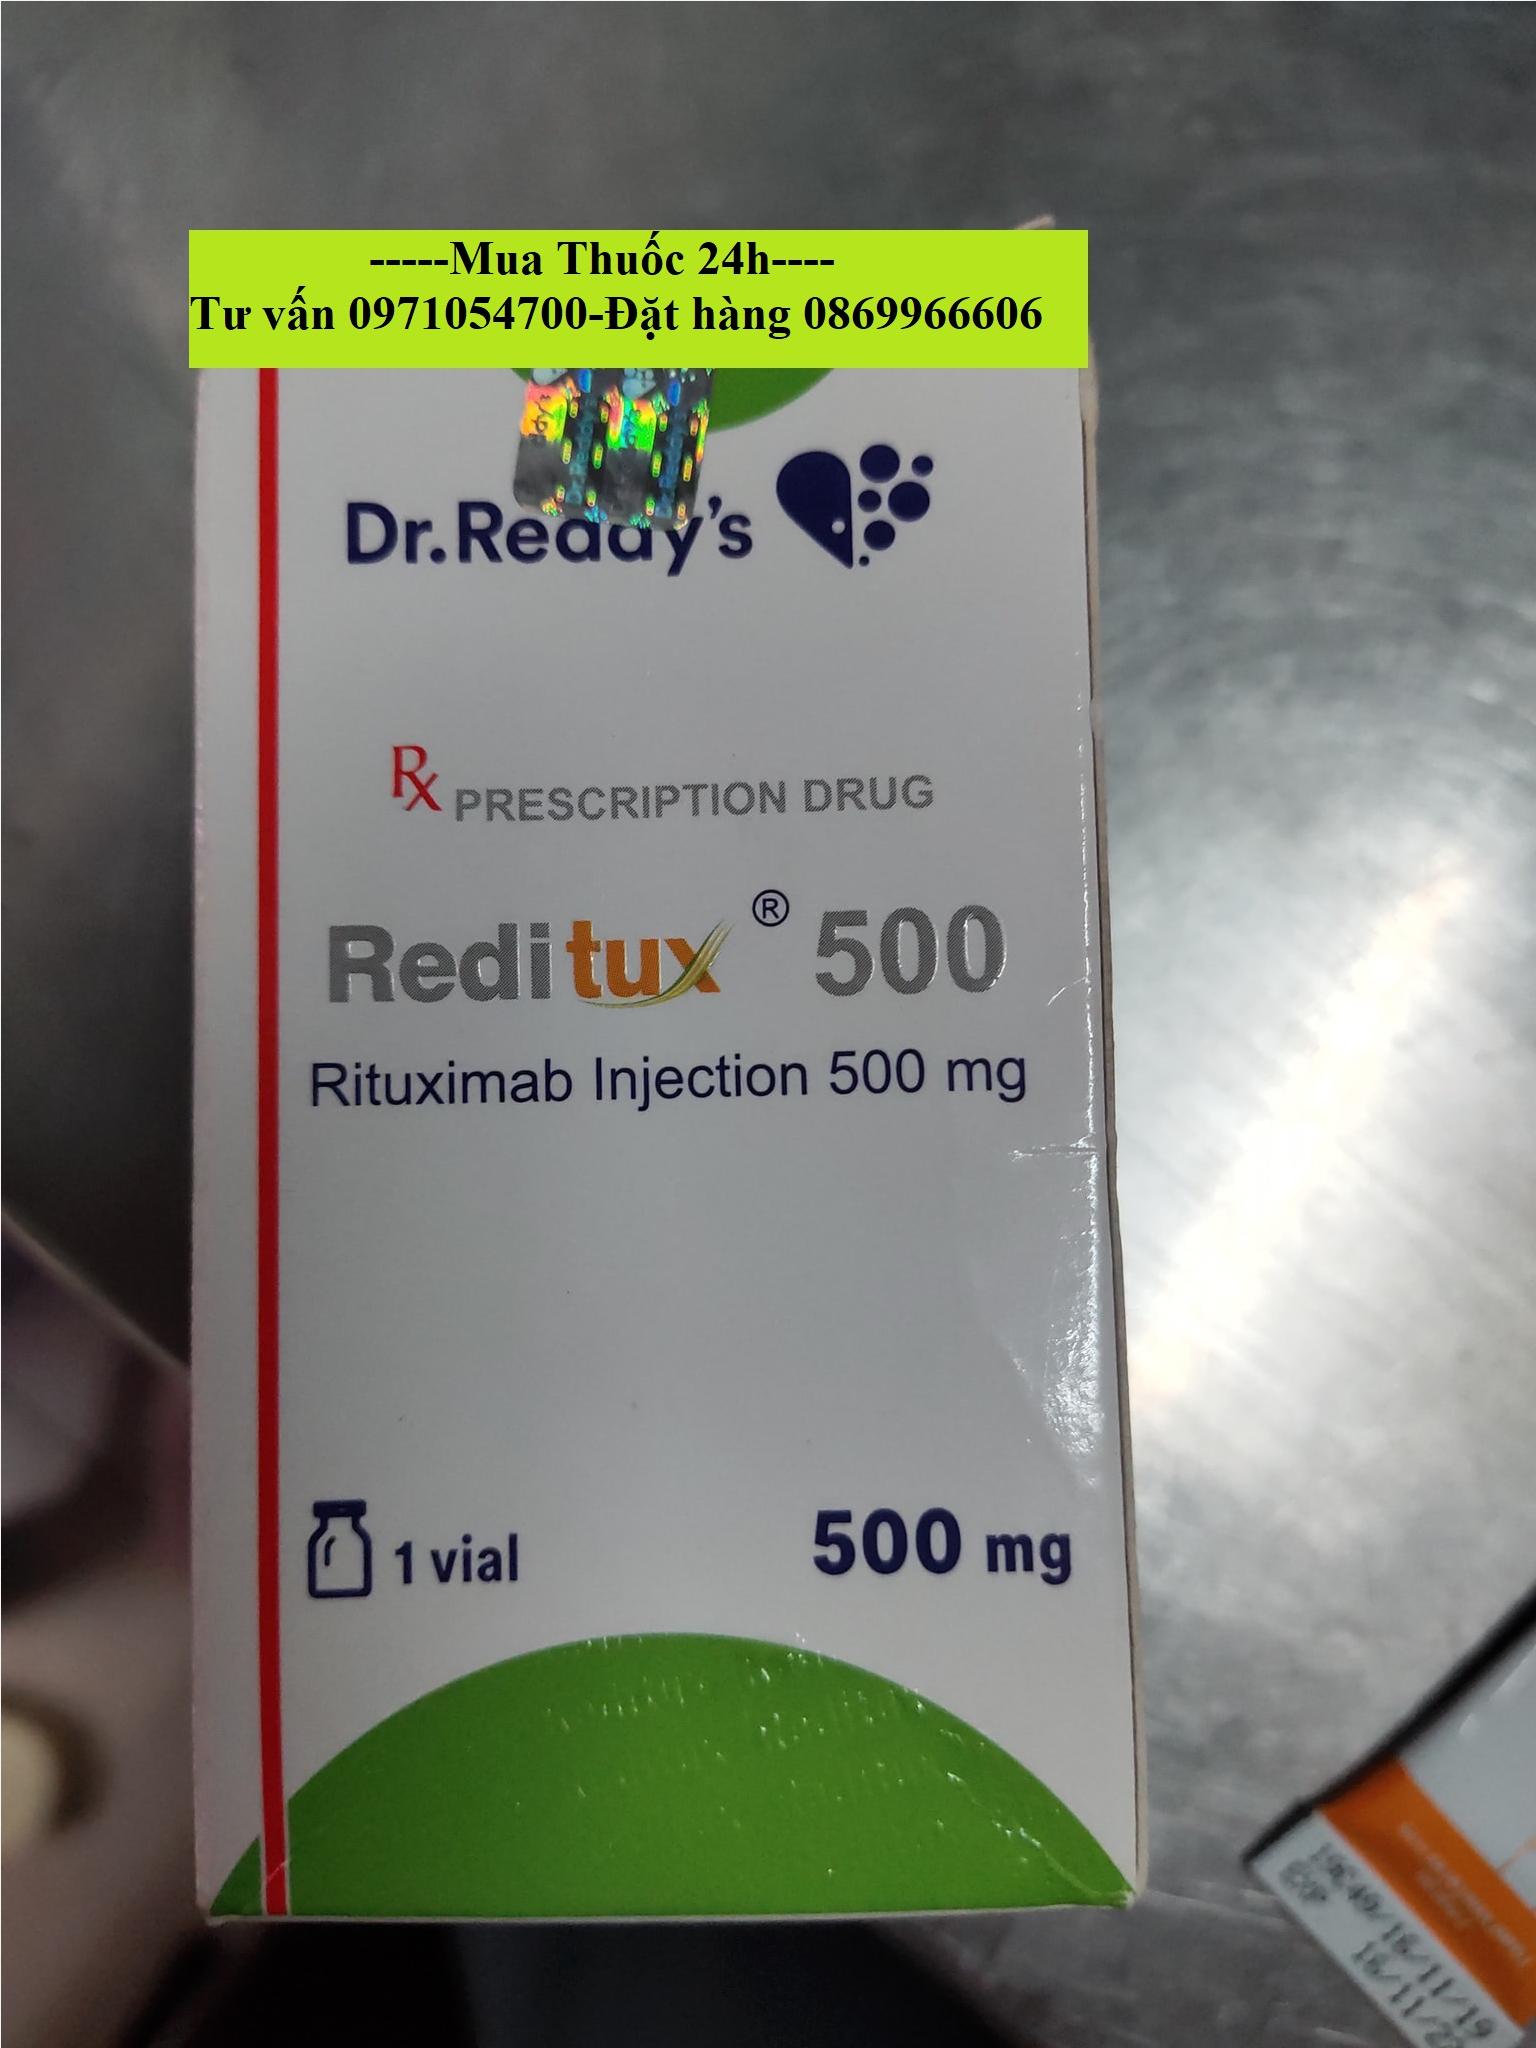 Thuốc Reditux Rituximab giá bao nhiêu mua ở đâu?